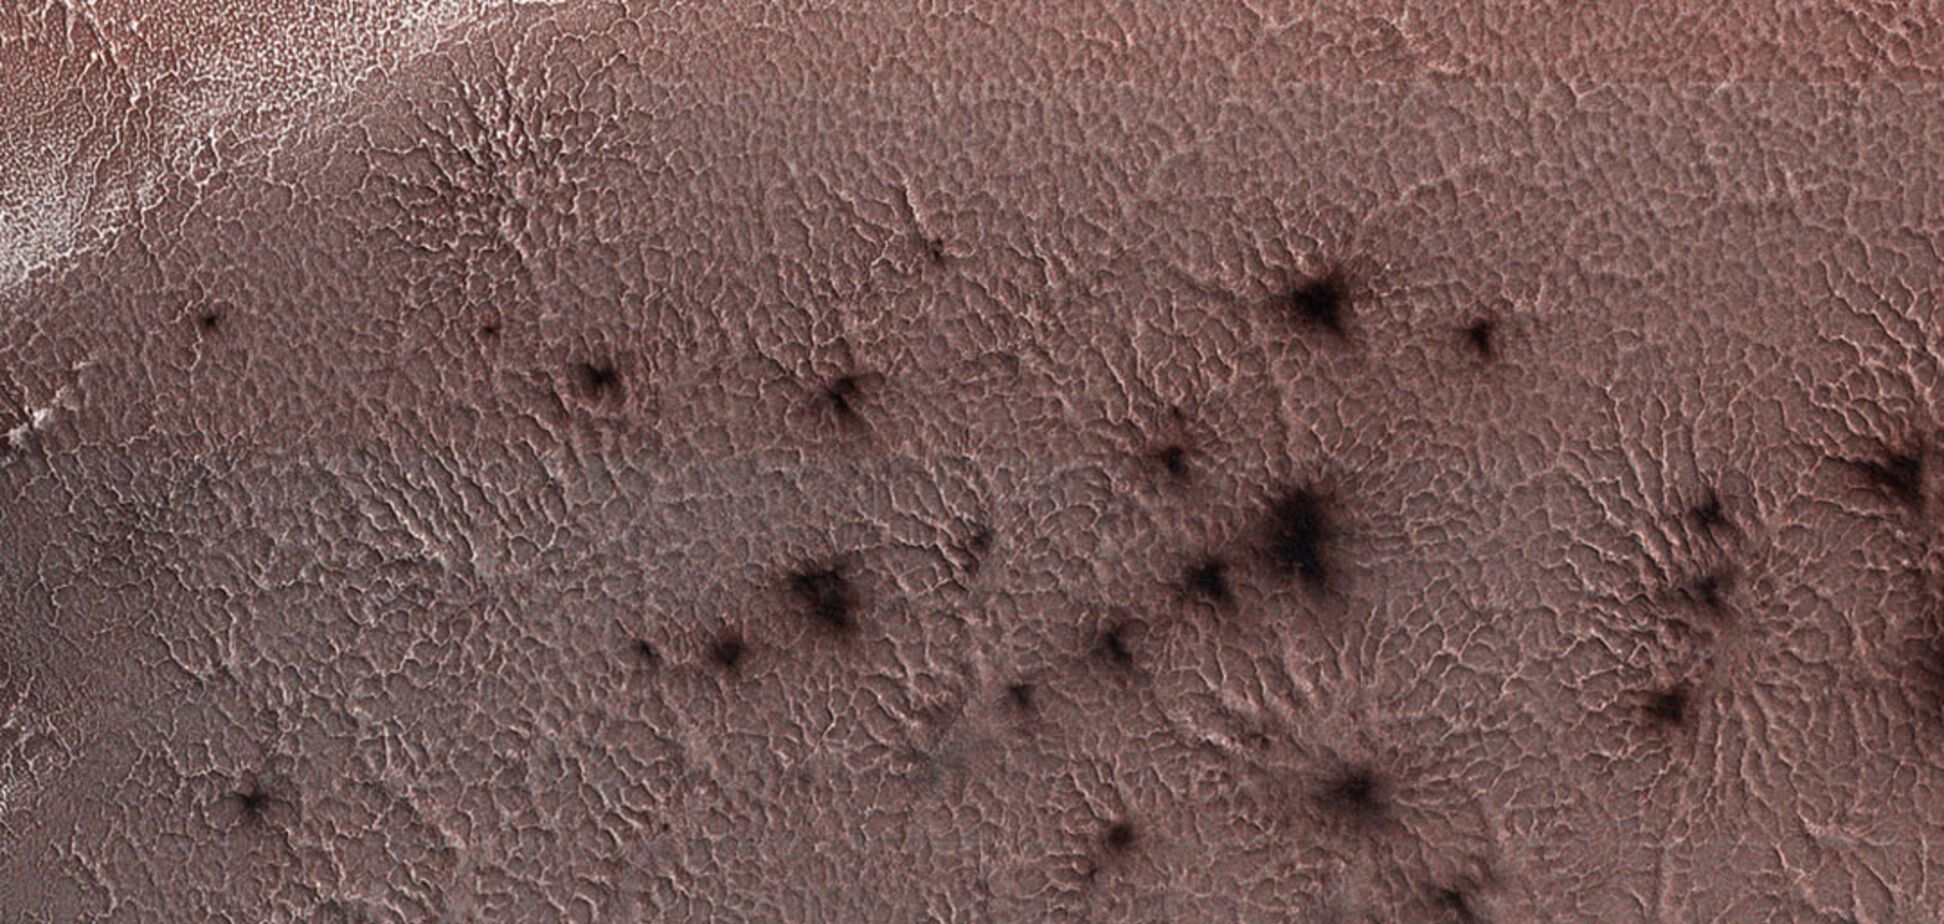 Огромные 'пауки' на поверхности: NASA показало странные фото с Марса 